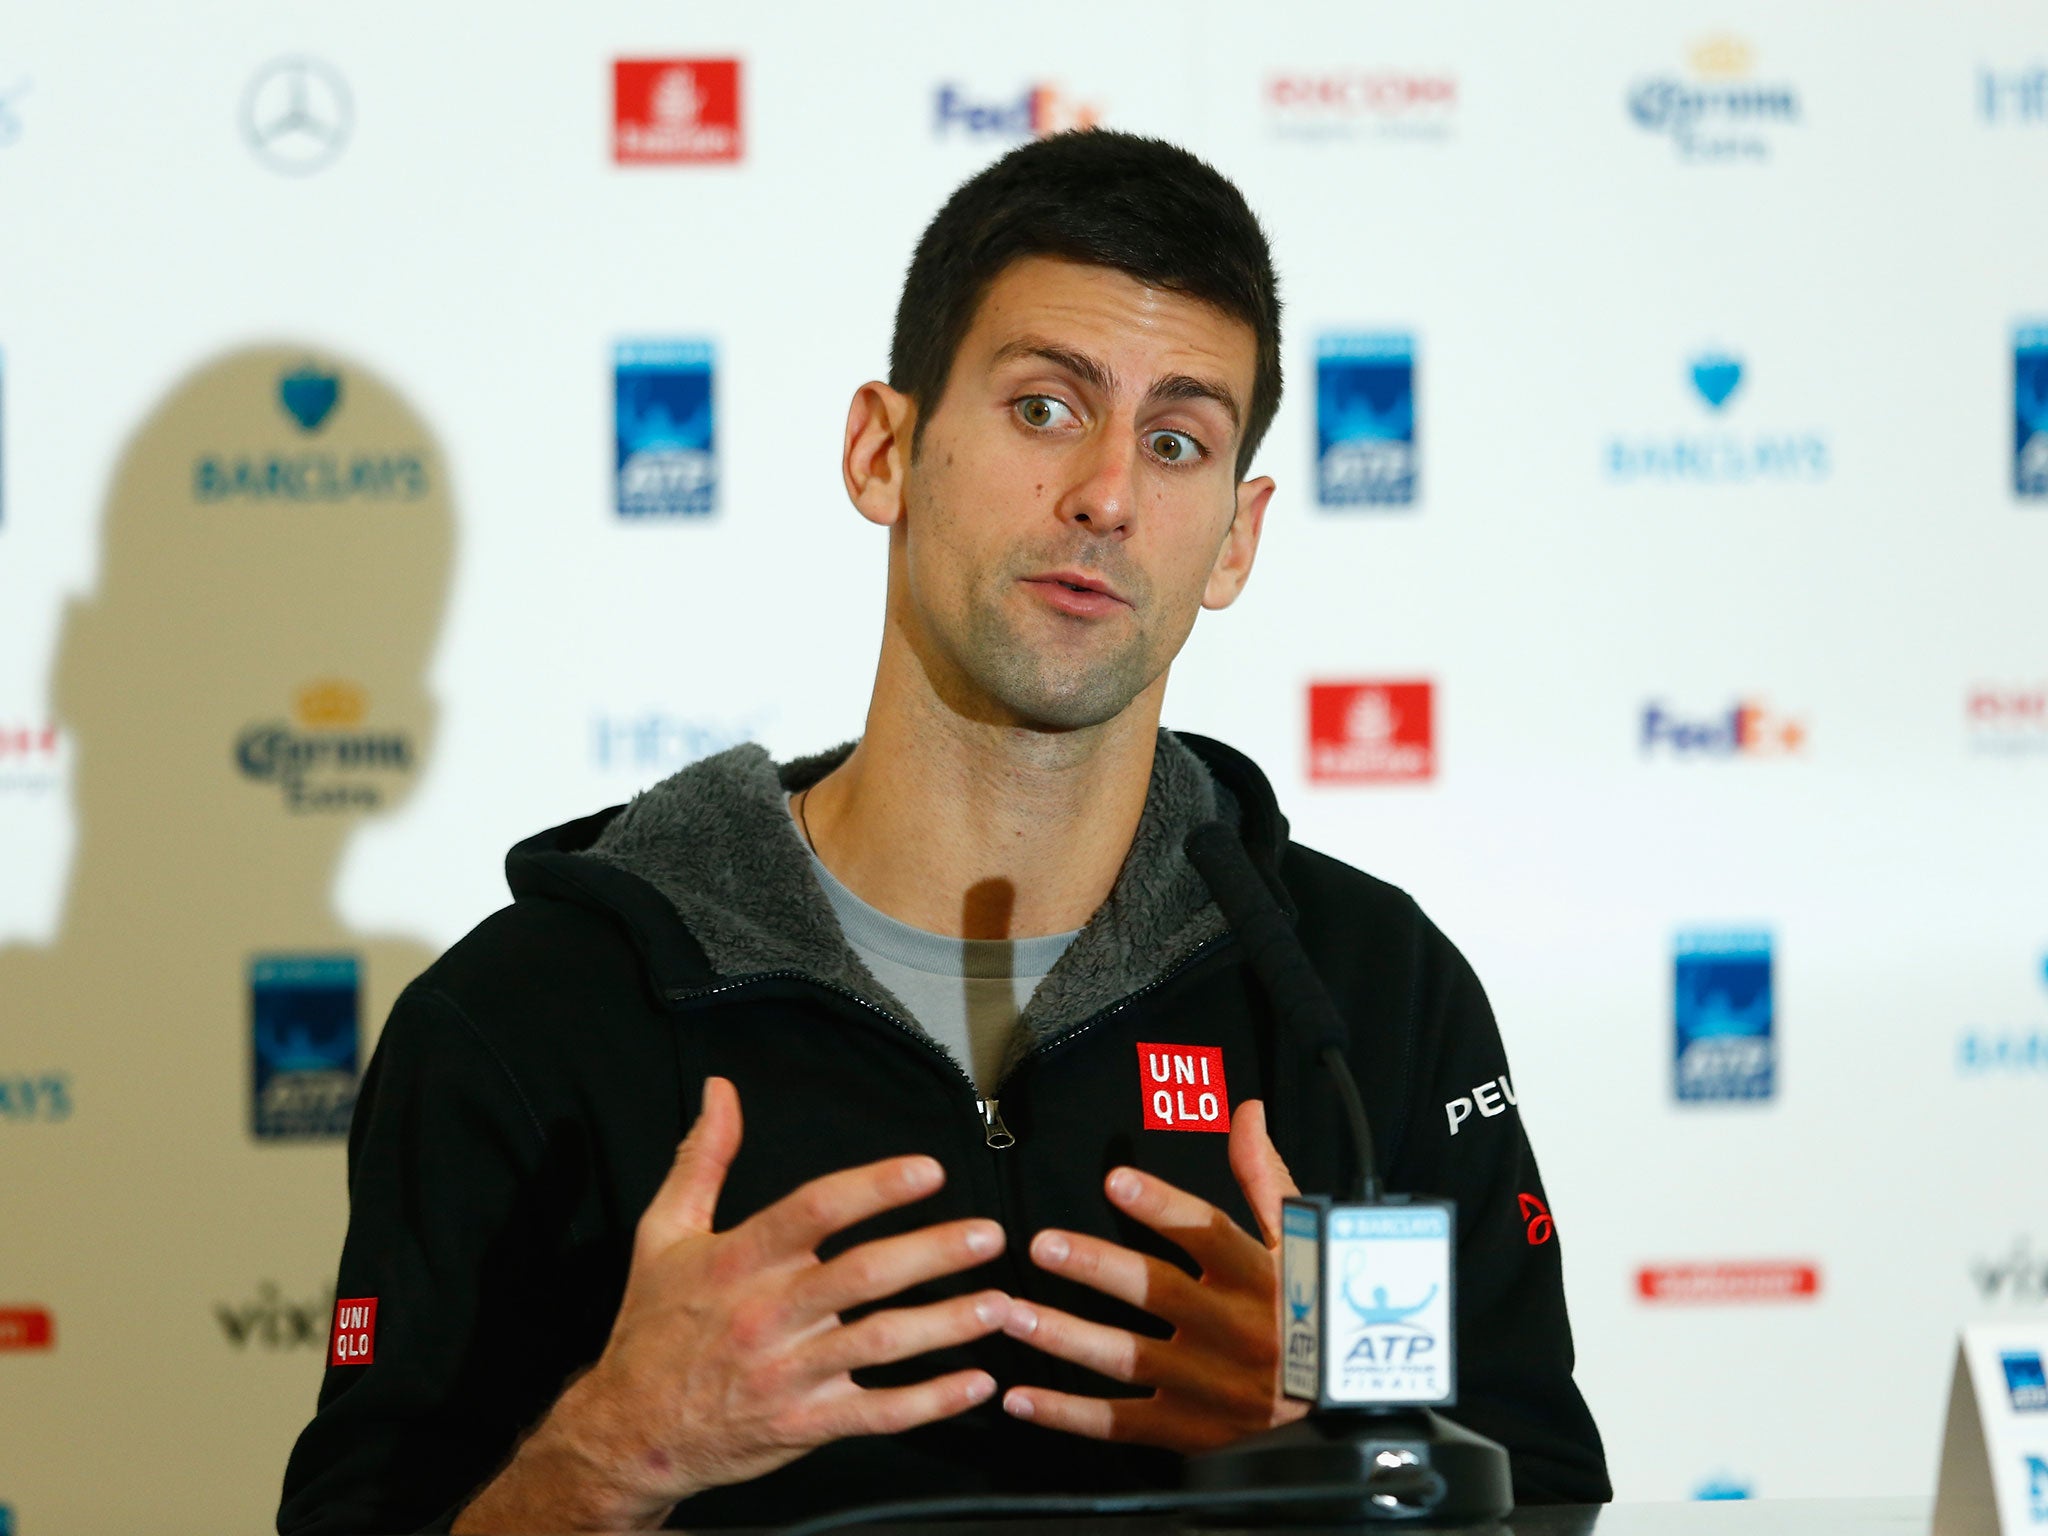 World No 1 tennis player Novak Djokovic